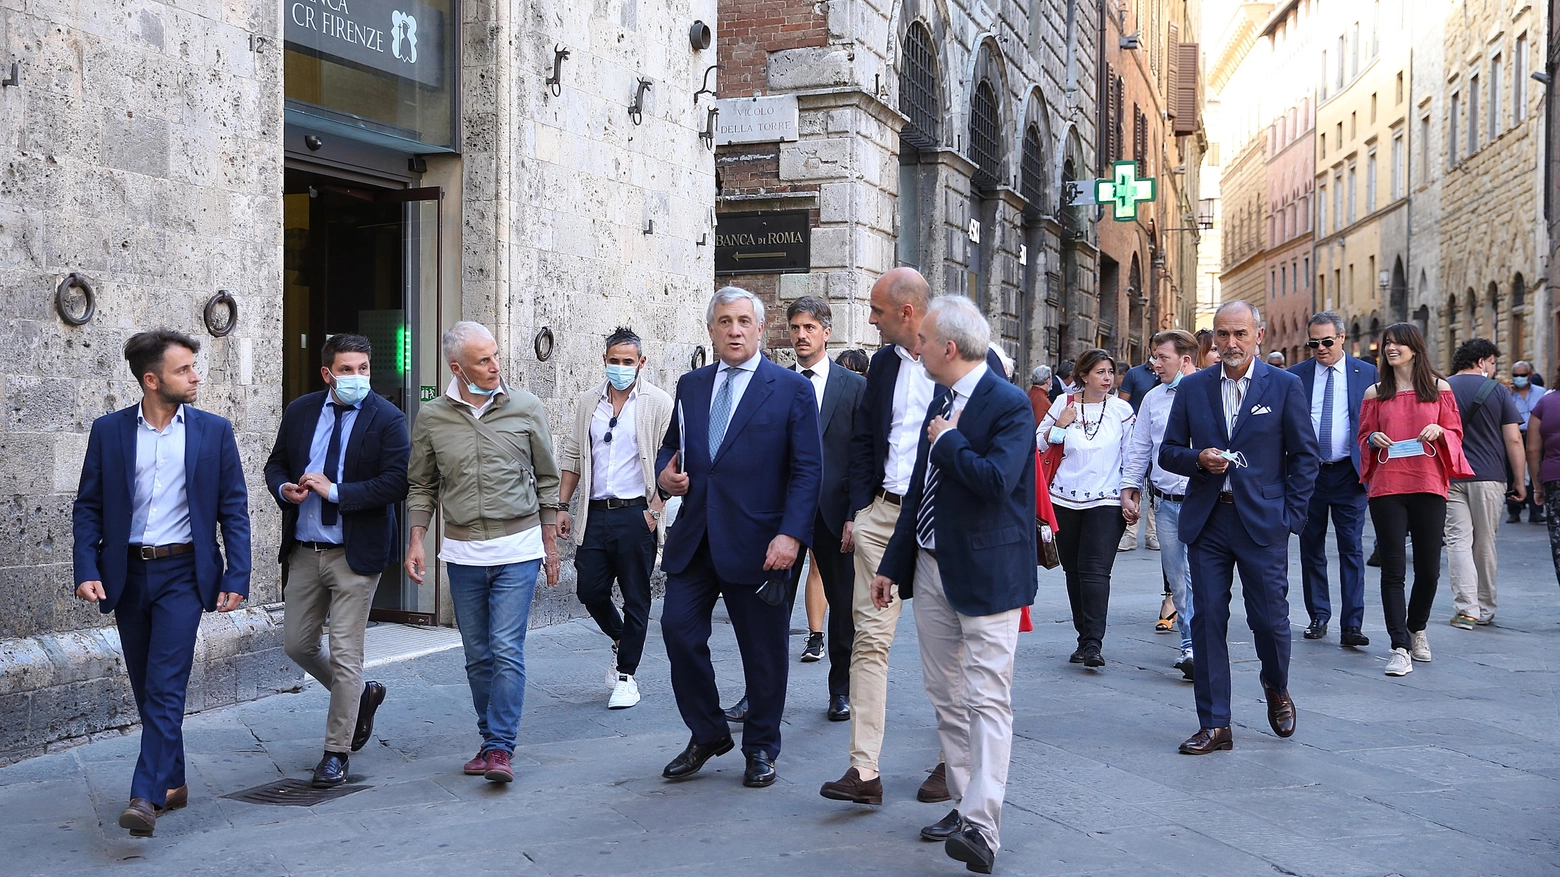 Tour elettorale per il vicepresidente di Forza Italia Tajani ieri a Firenze, Pisa e Siena